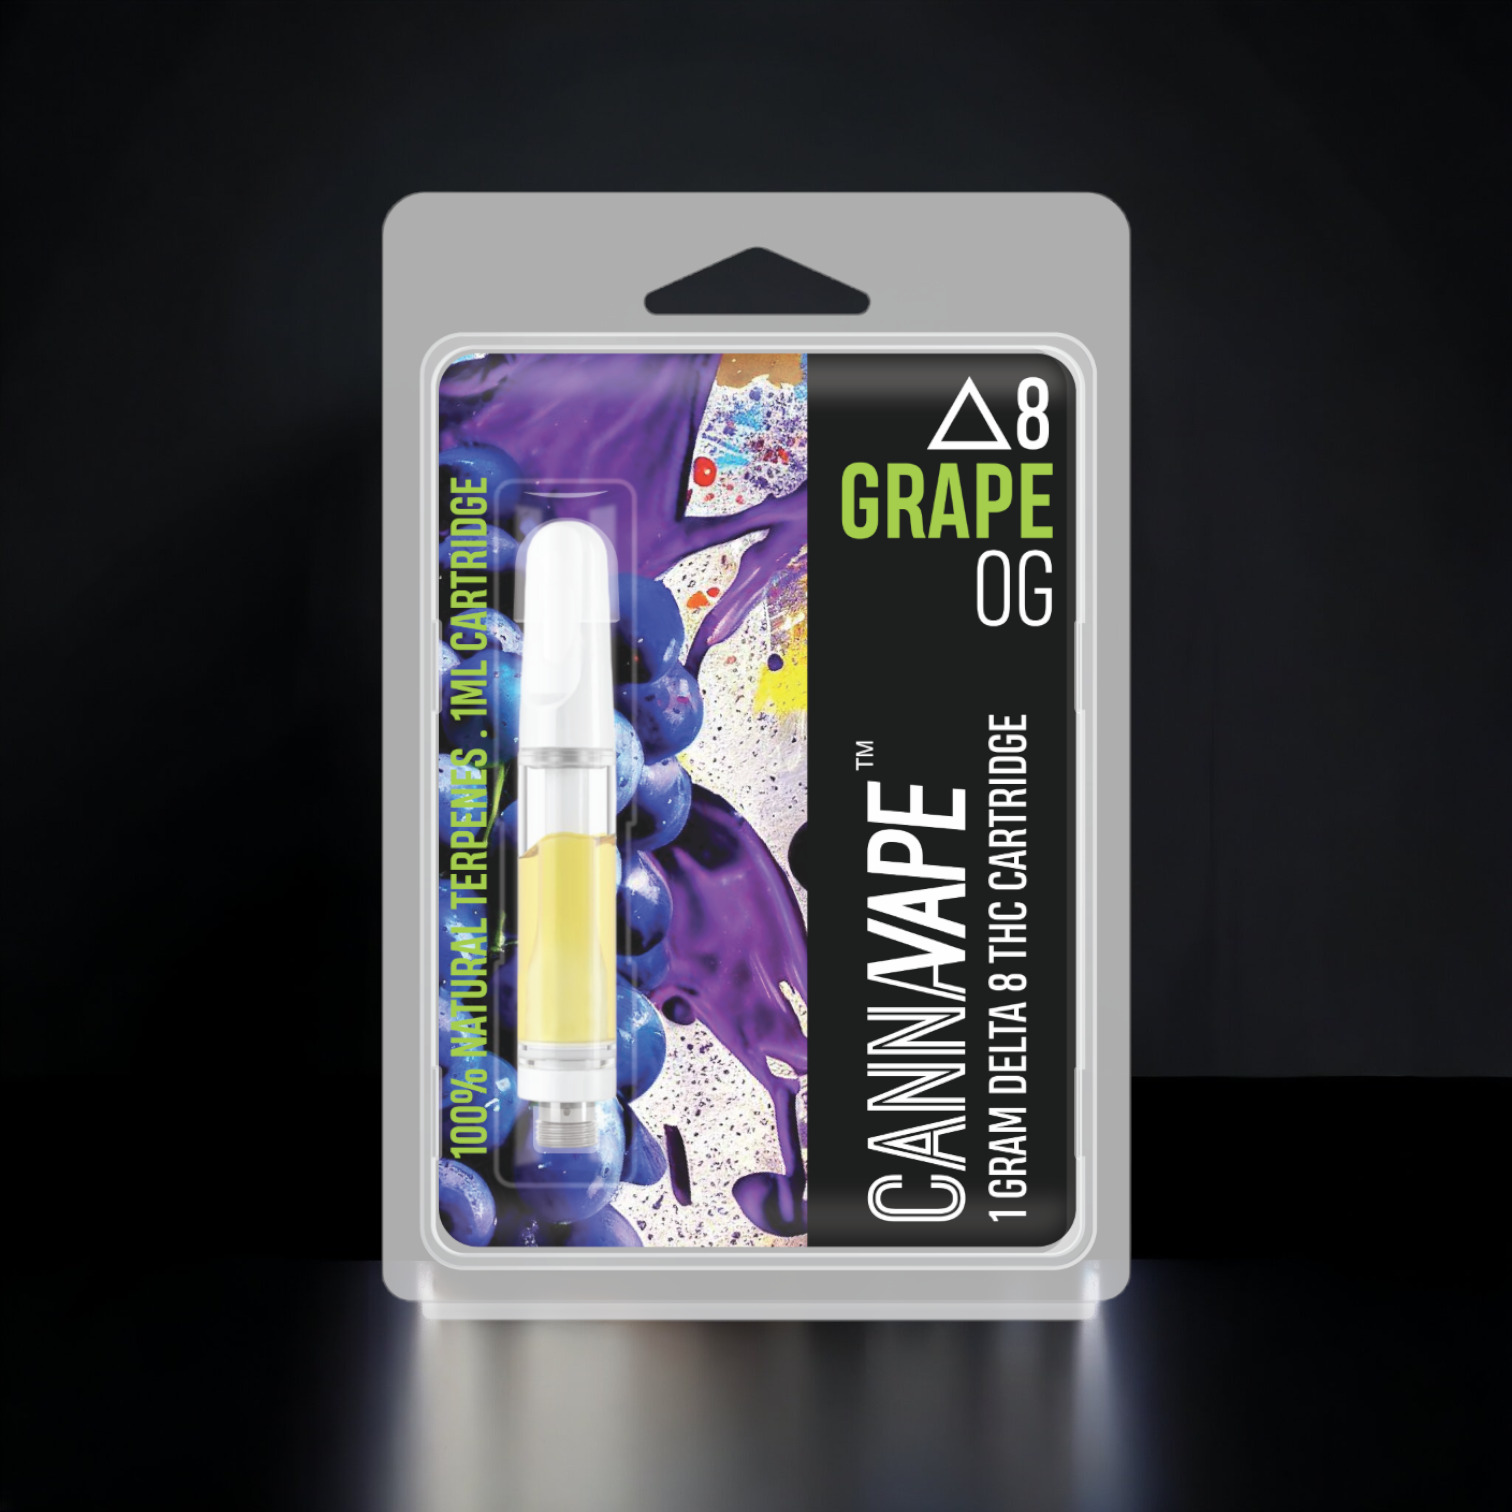 Grape OG Delta 8 Vape Cartridge